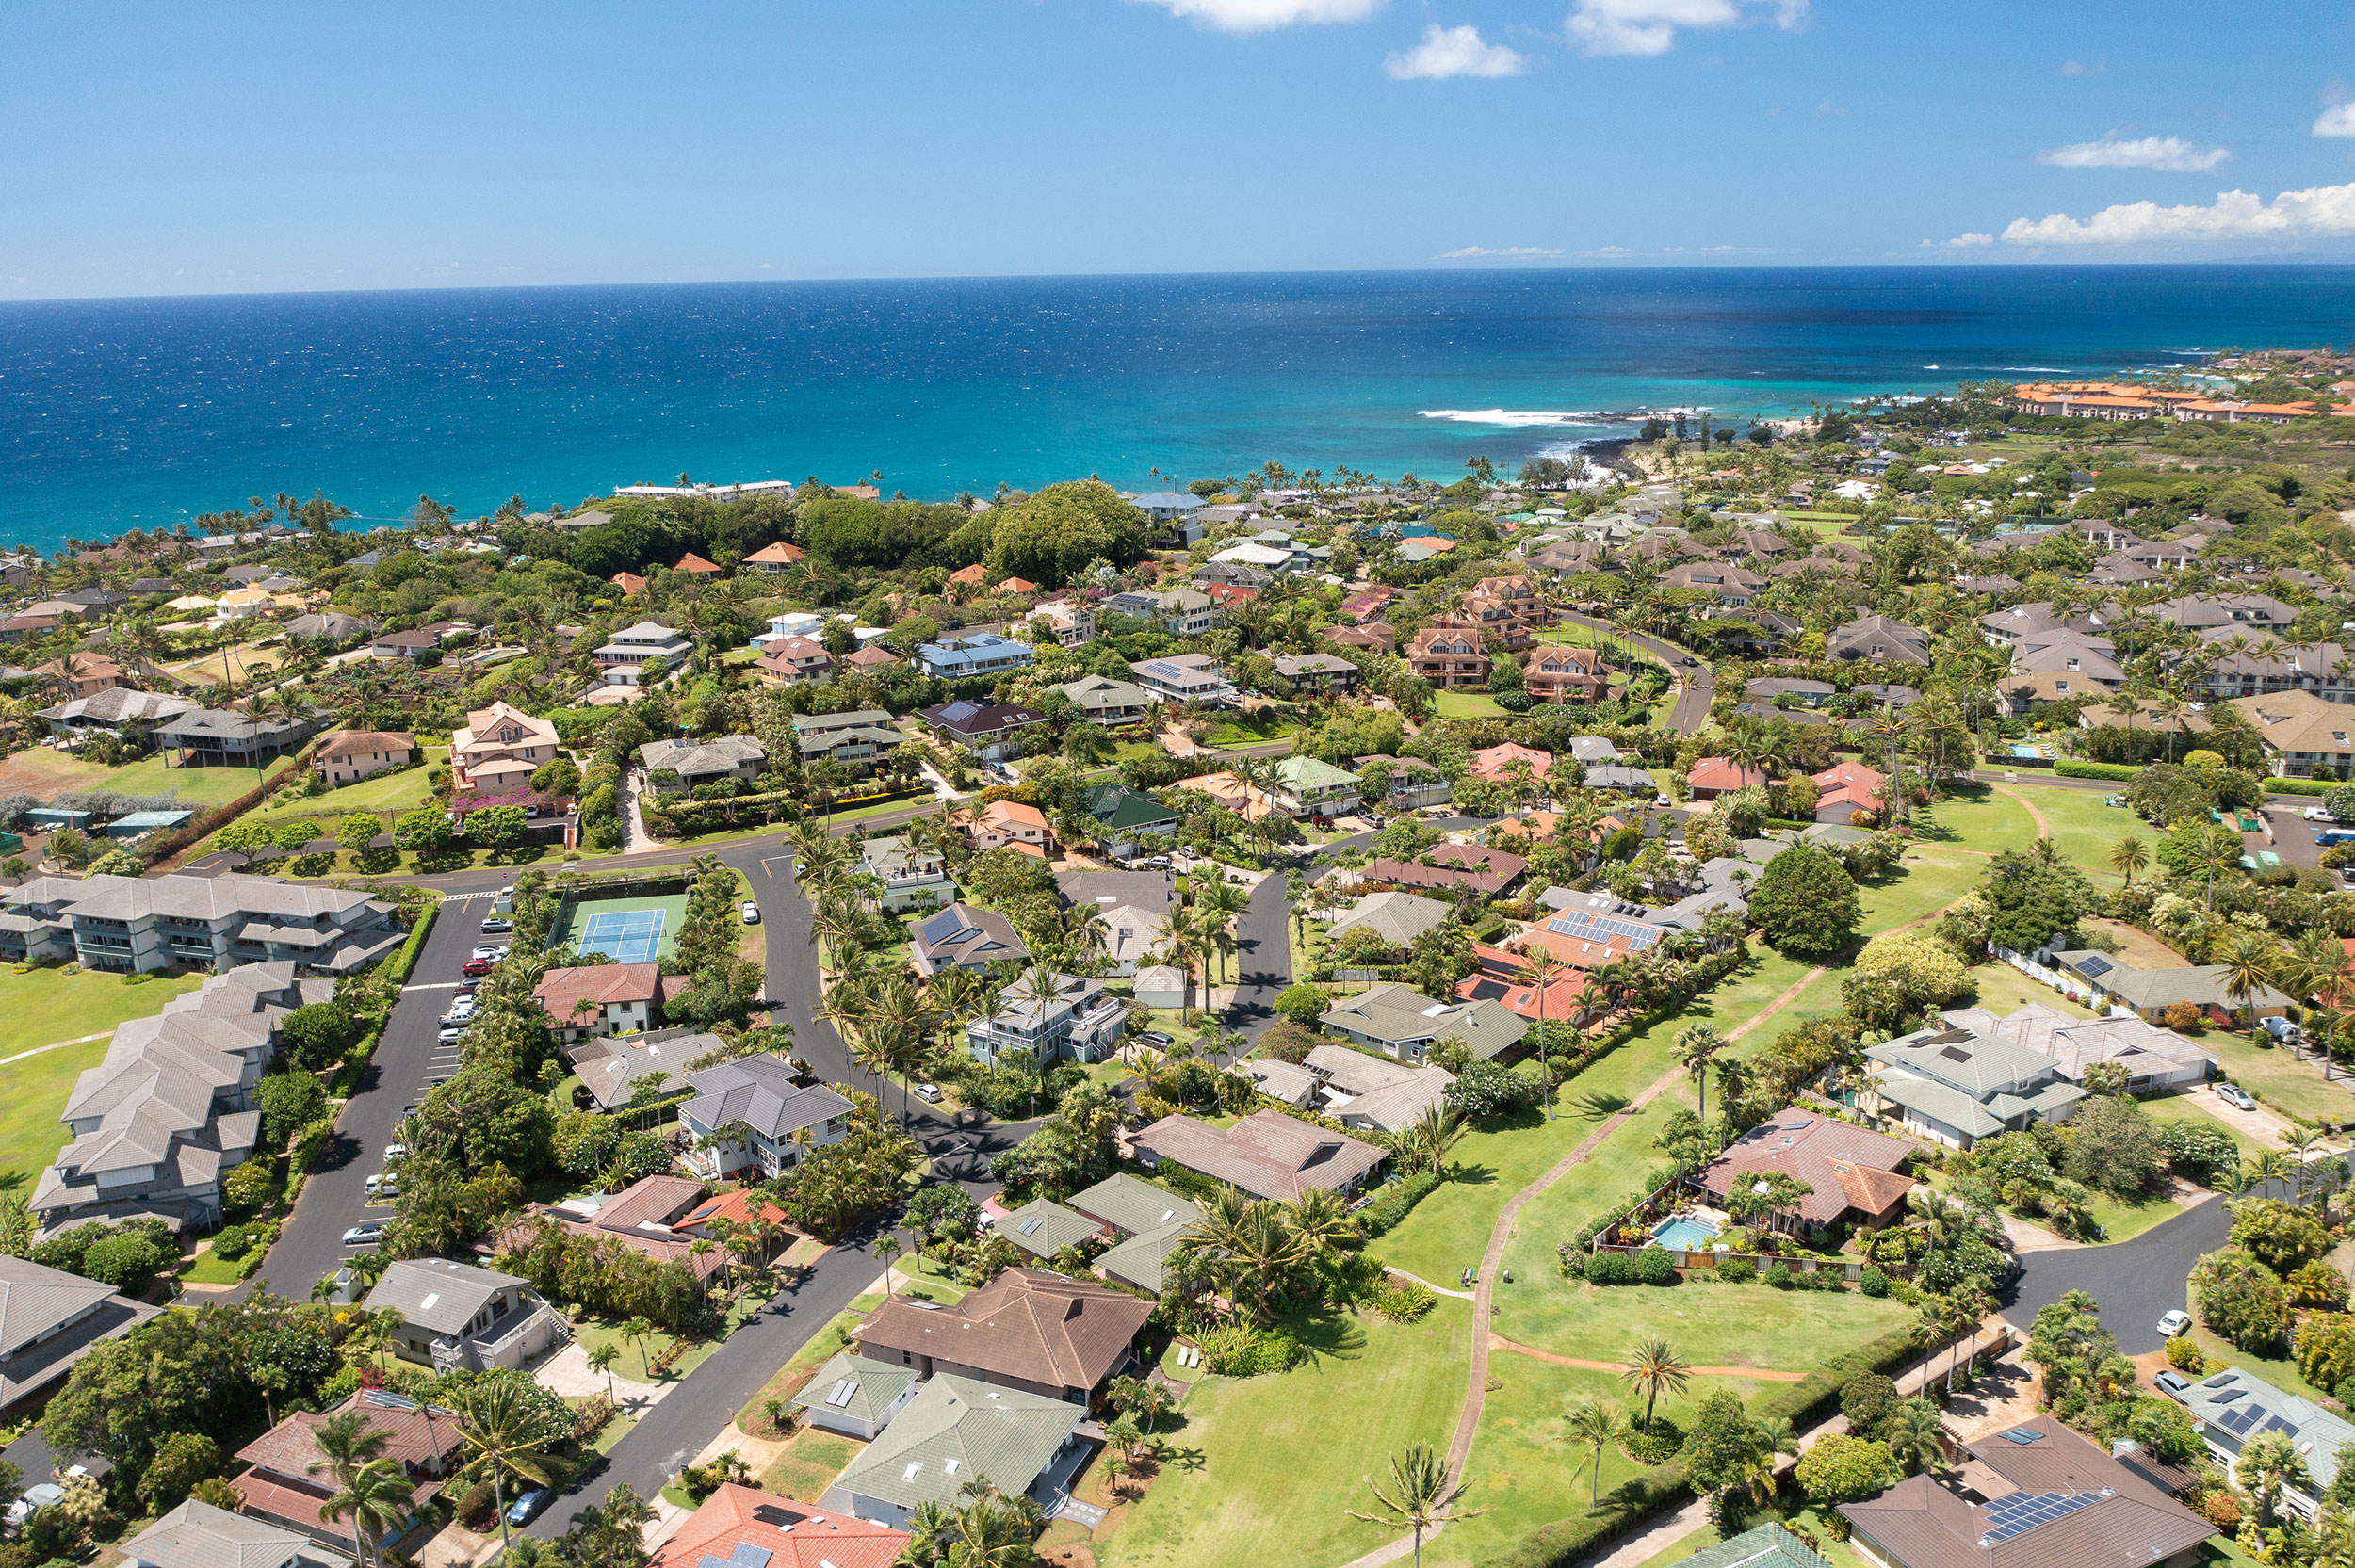 Aerial View of the Poipu Kai Resort area